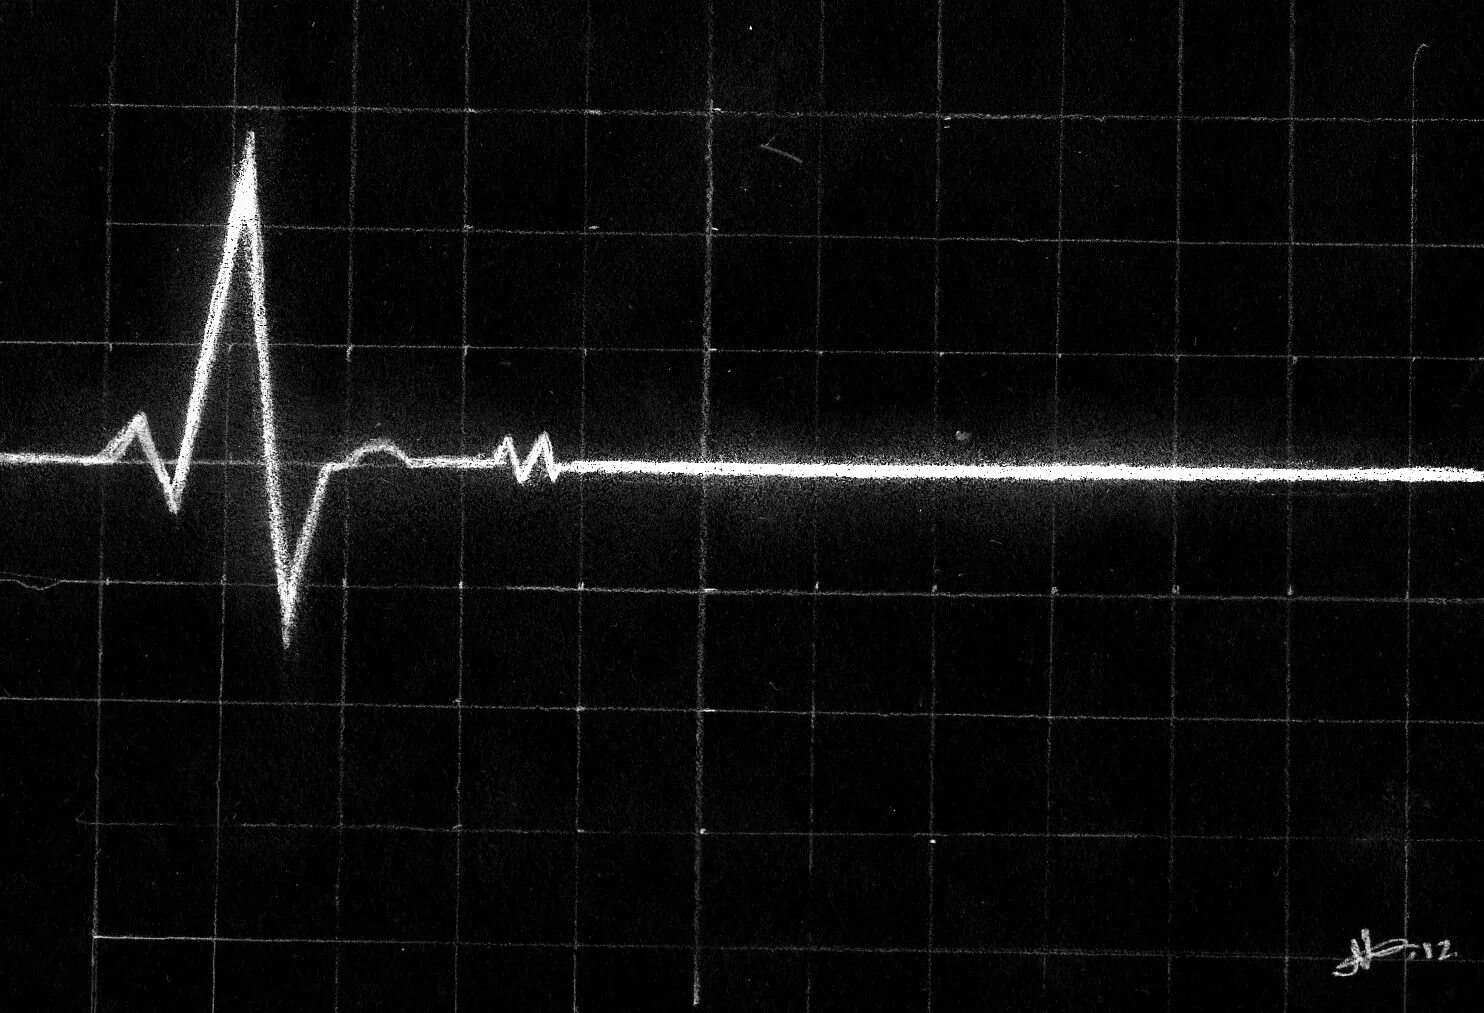 Пульс бьется сильнее. Кардиограмма остановки сердца. Линия биения сердца. Прямая линия на кардиограмме. Сердце остановилось.